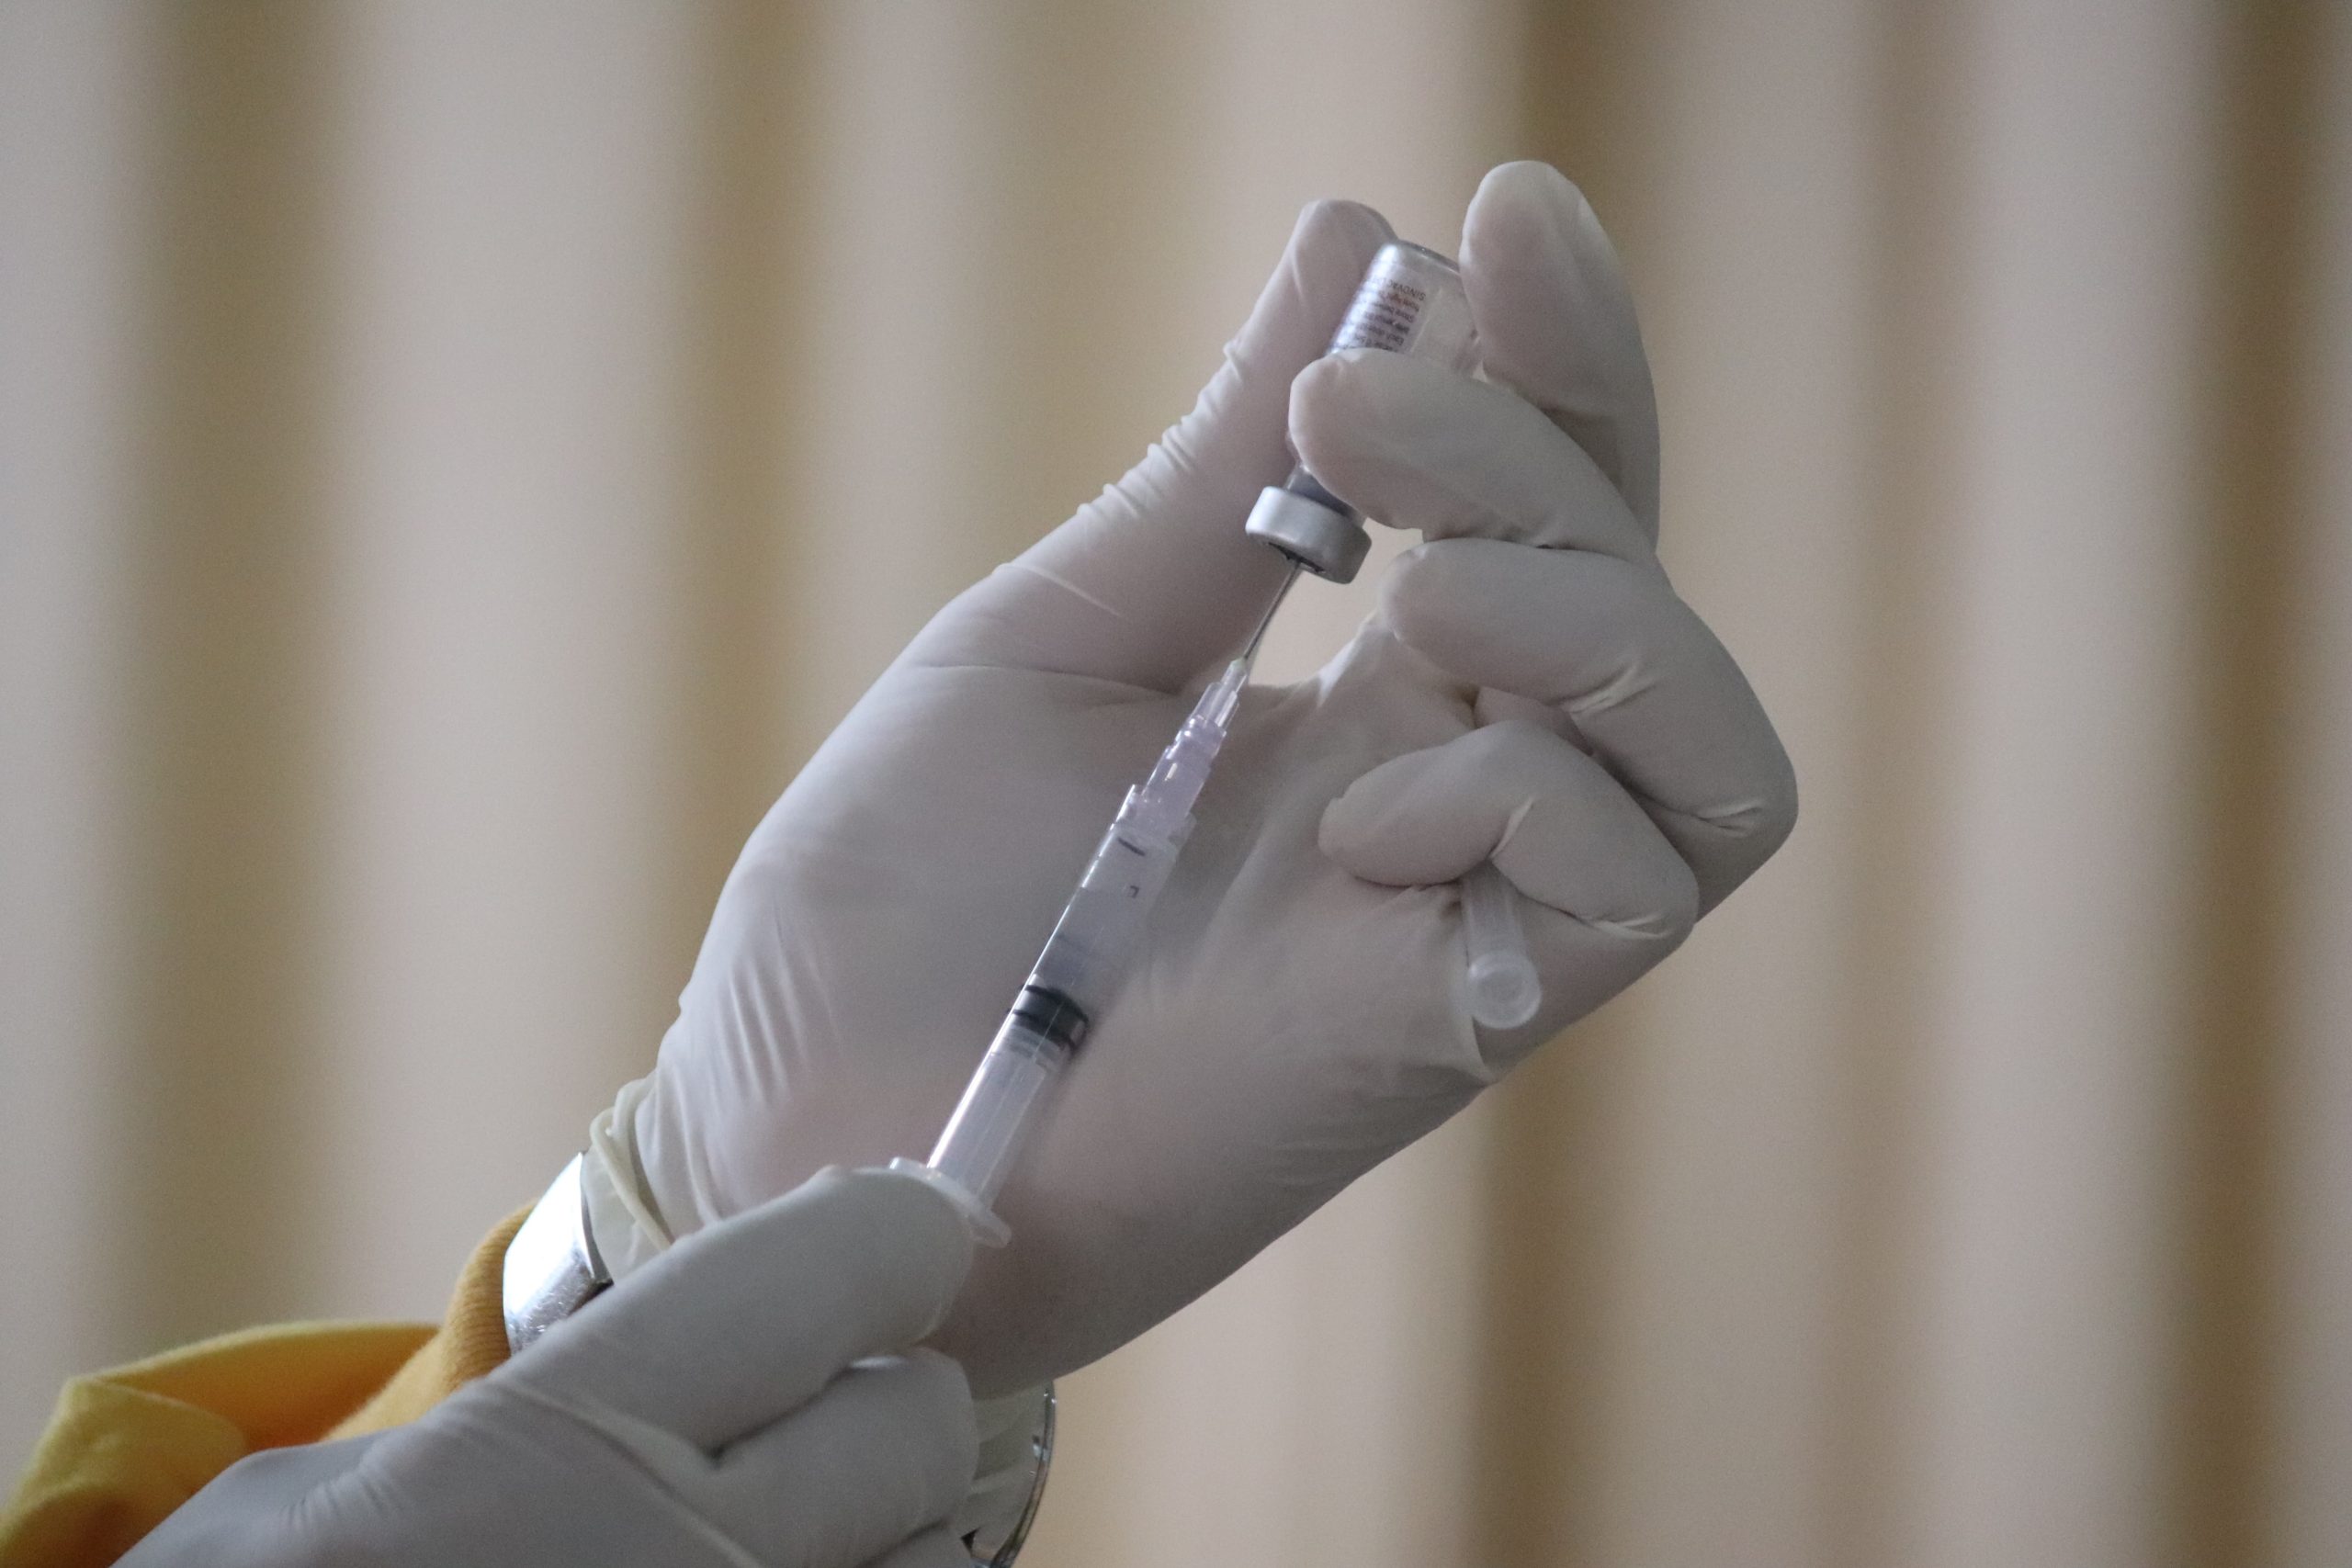 Filipinas solicita 700 millones de dólares al BAsD y al BAII para la distribución de vacunas